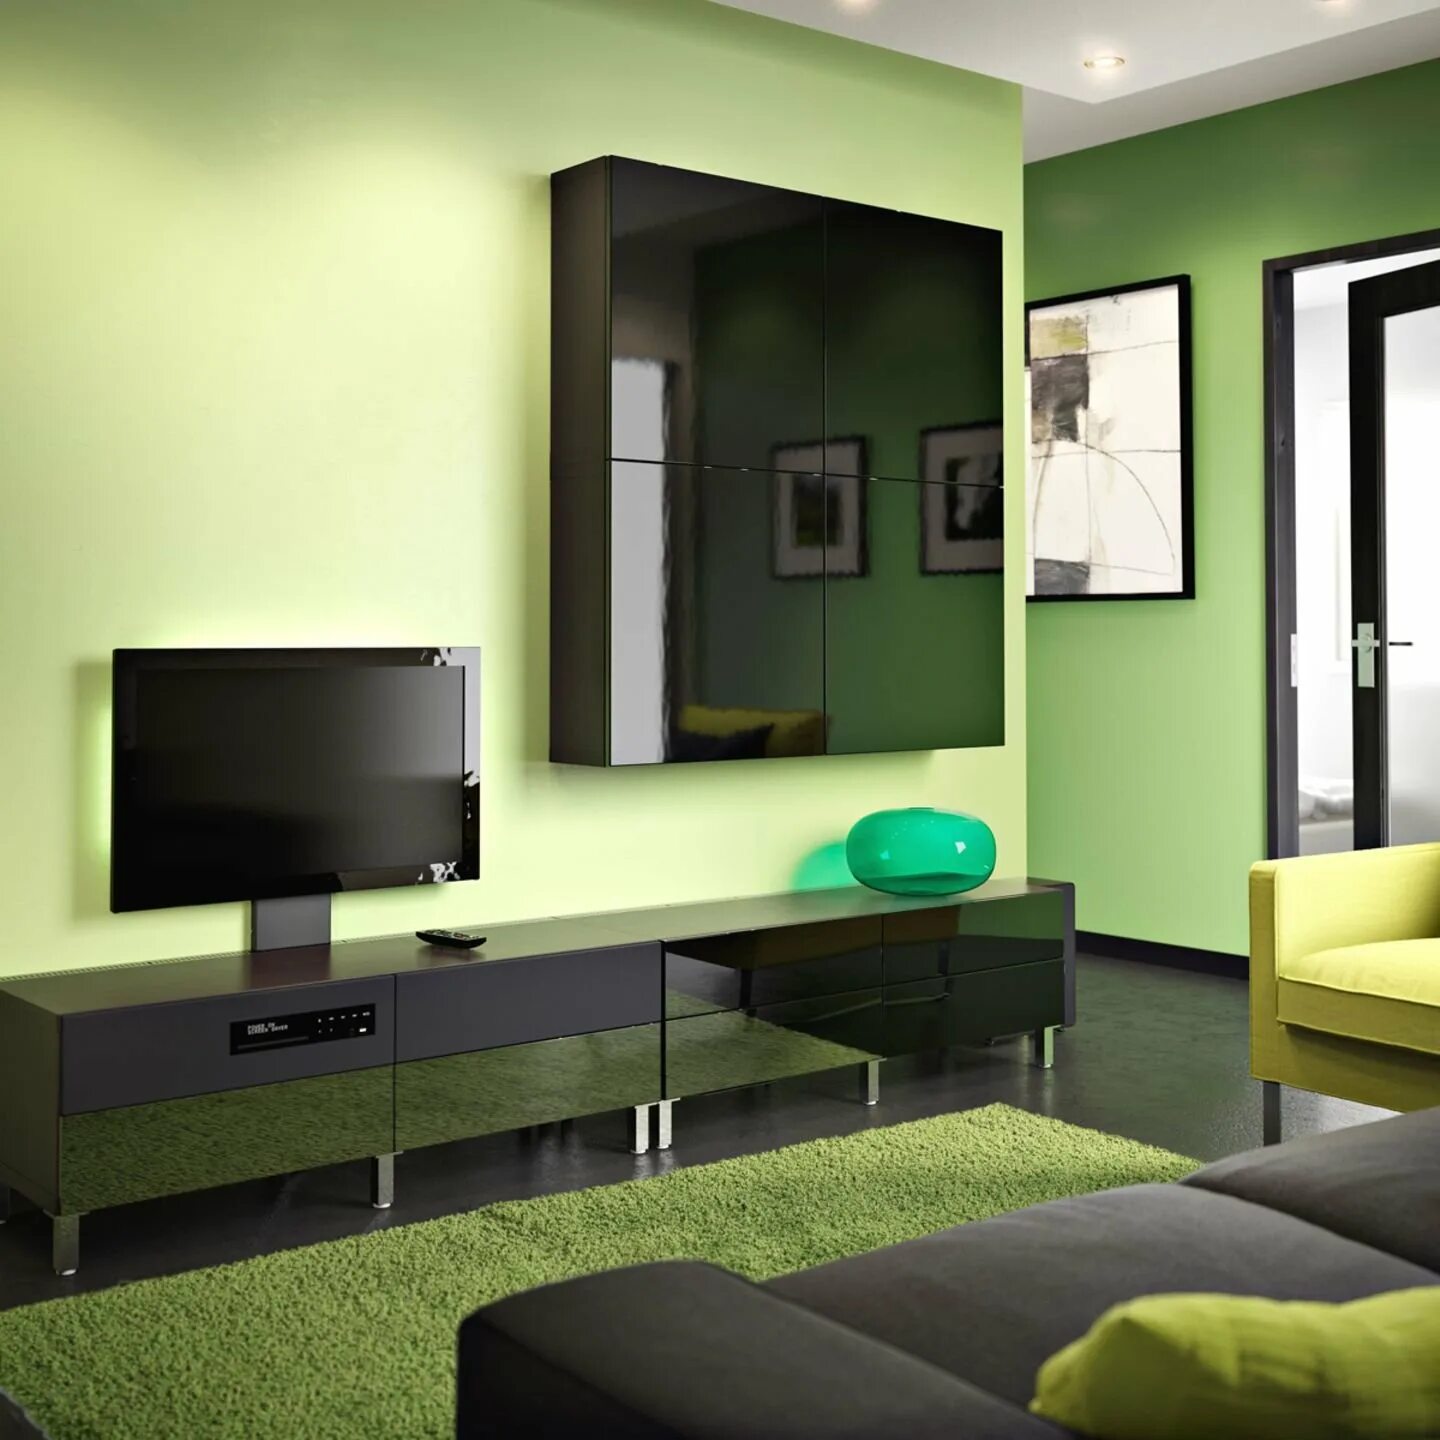 Сочетание цвета мебели в стенами. Гостиная в салатовых тонах. Зеленые стены в гостиной. Гостиная с зелеными стенами. Гостиная в зеленых тонах.